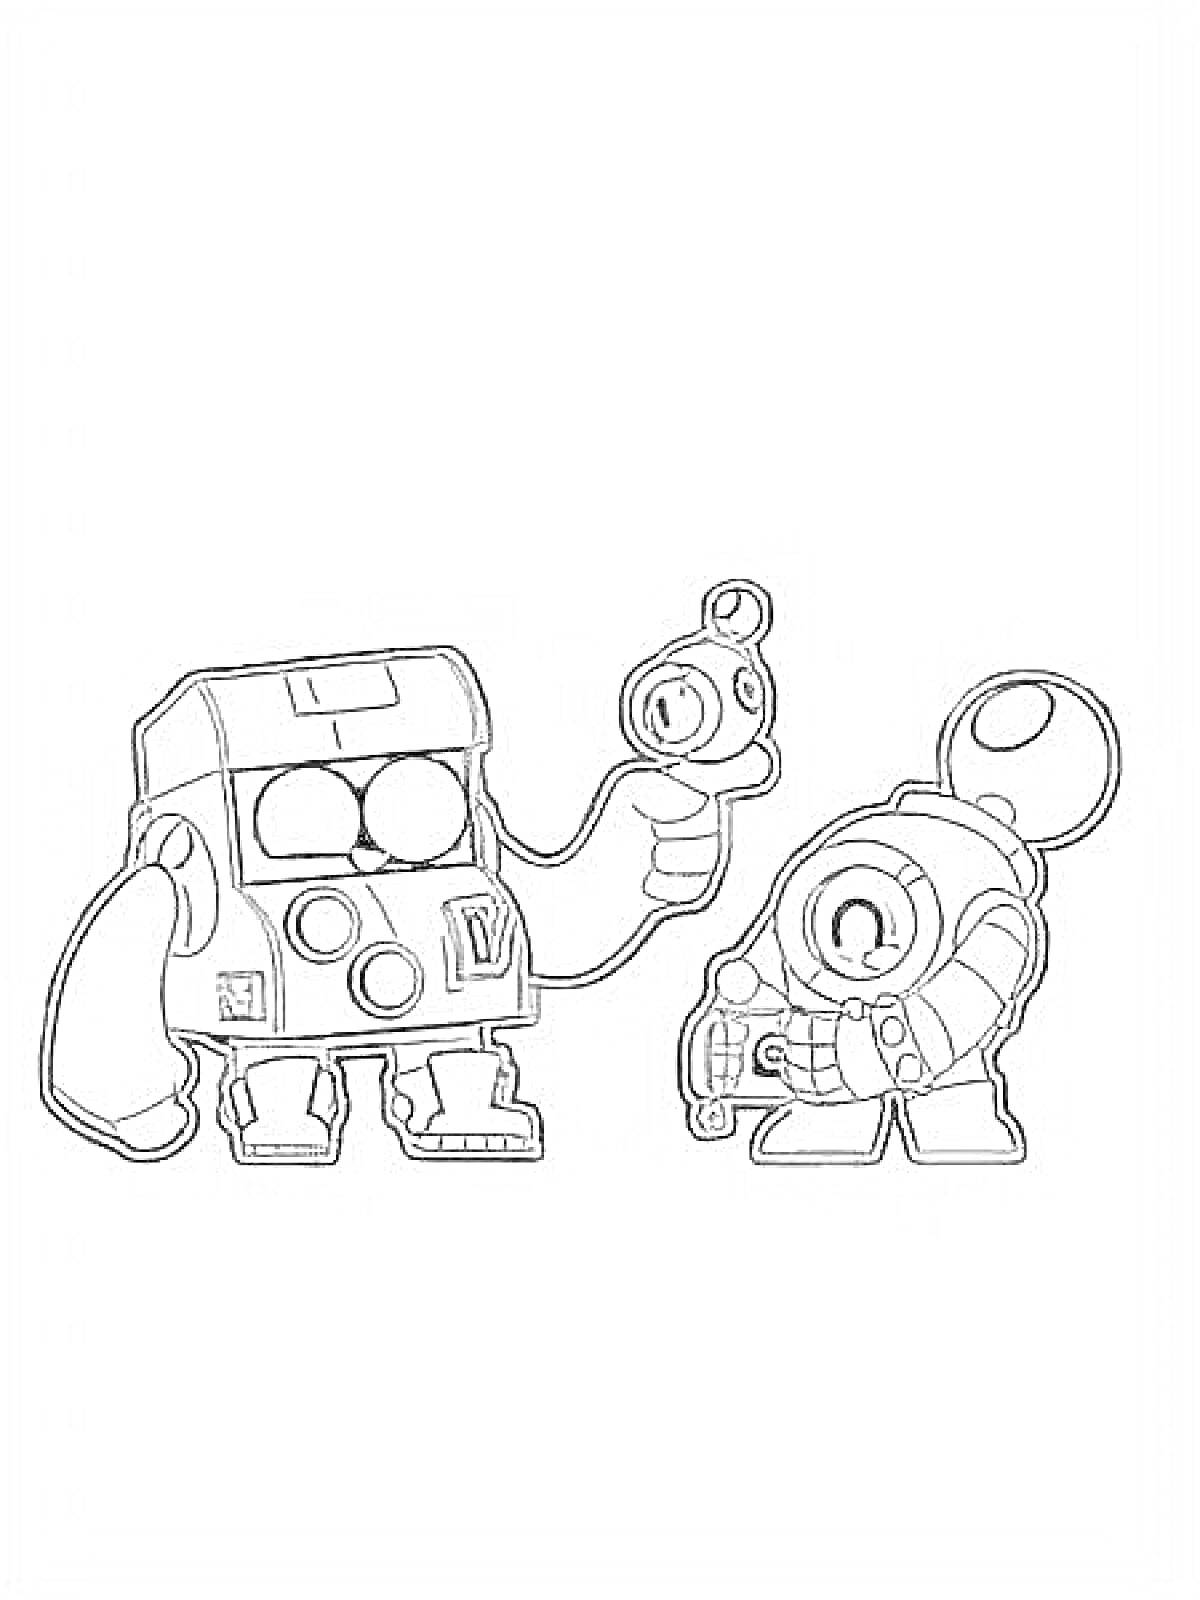 Раскраска Два персонажа Спраут из видеоигры, один из которых держит предмет в руках